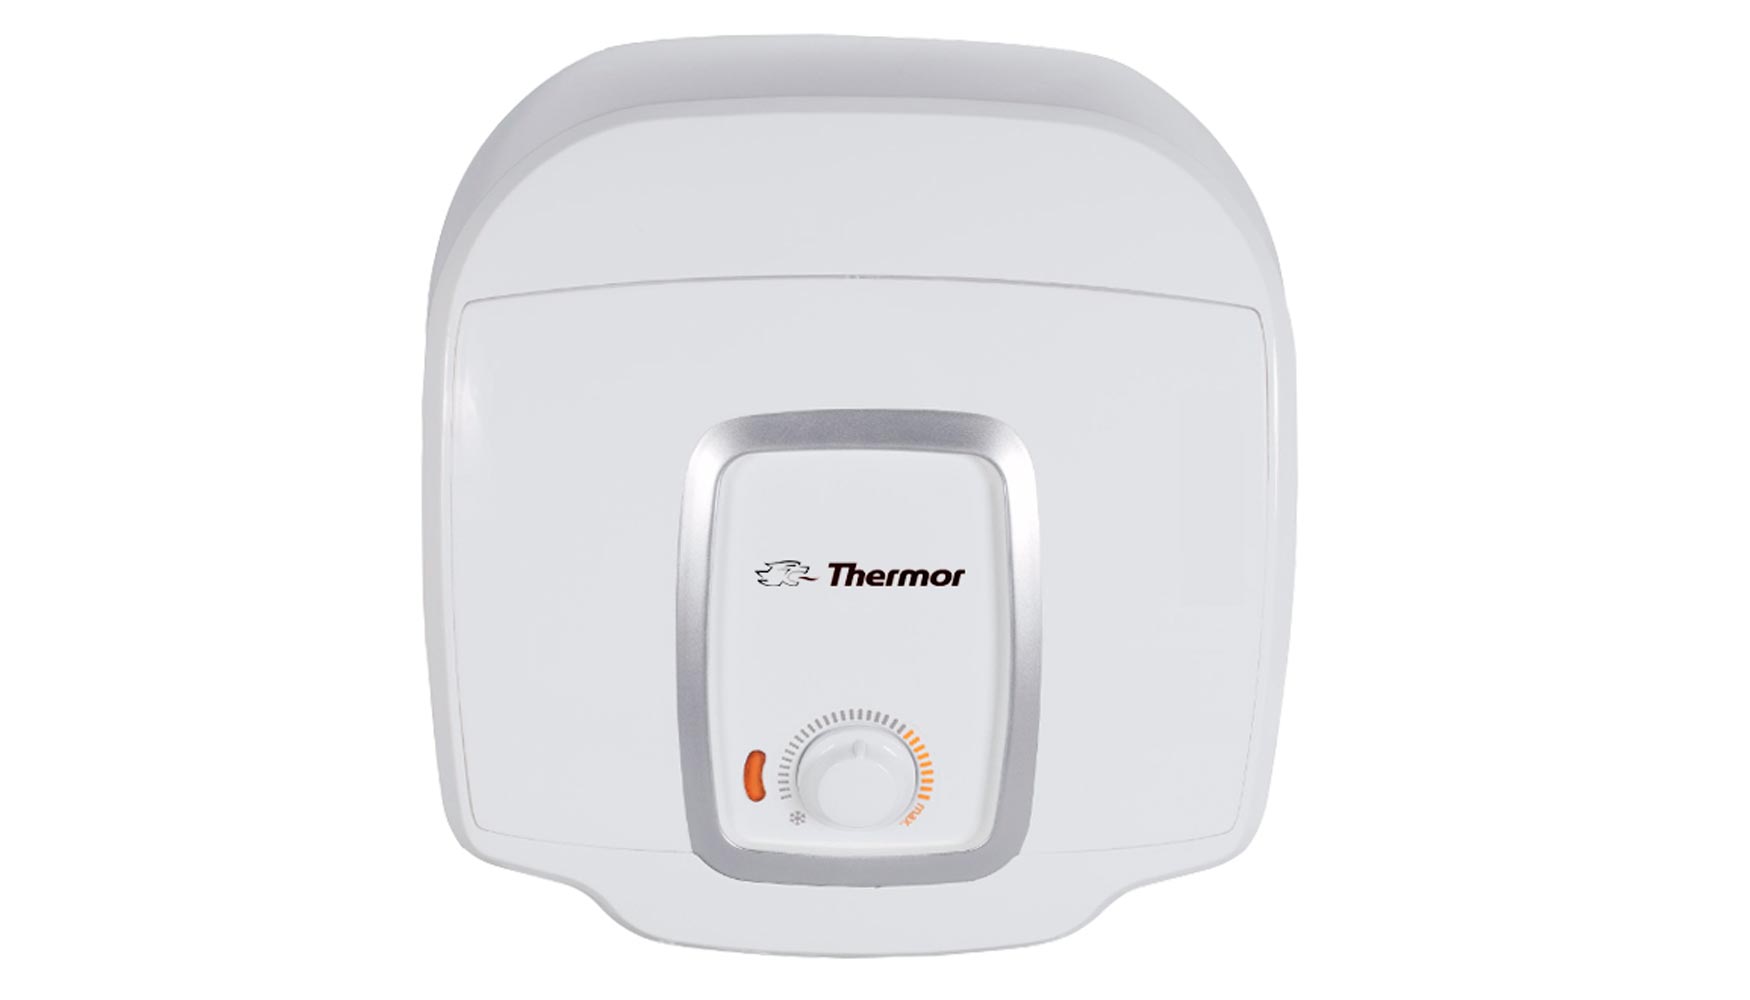 Thermor lanza al mercado su nueva Gama Compact